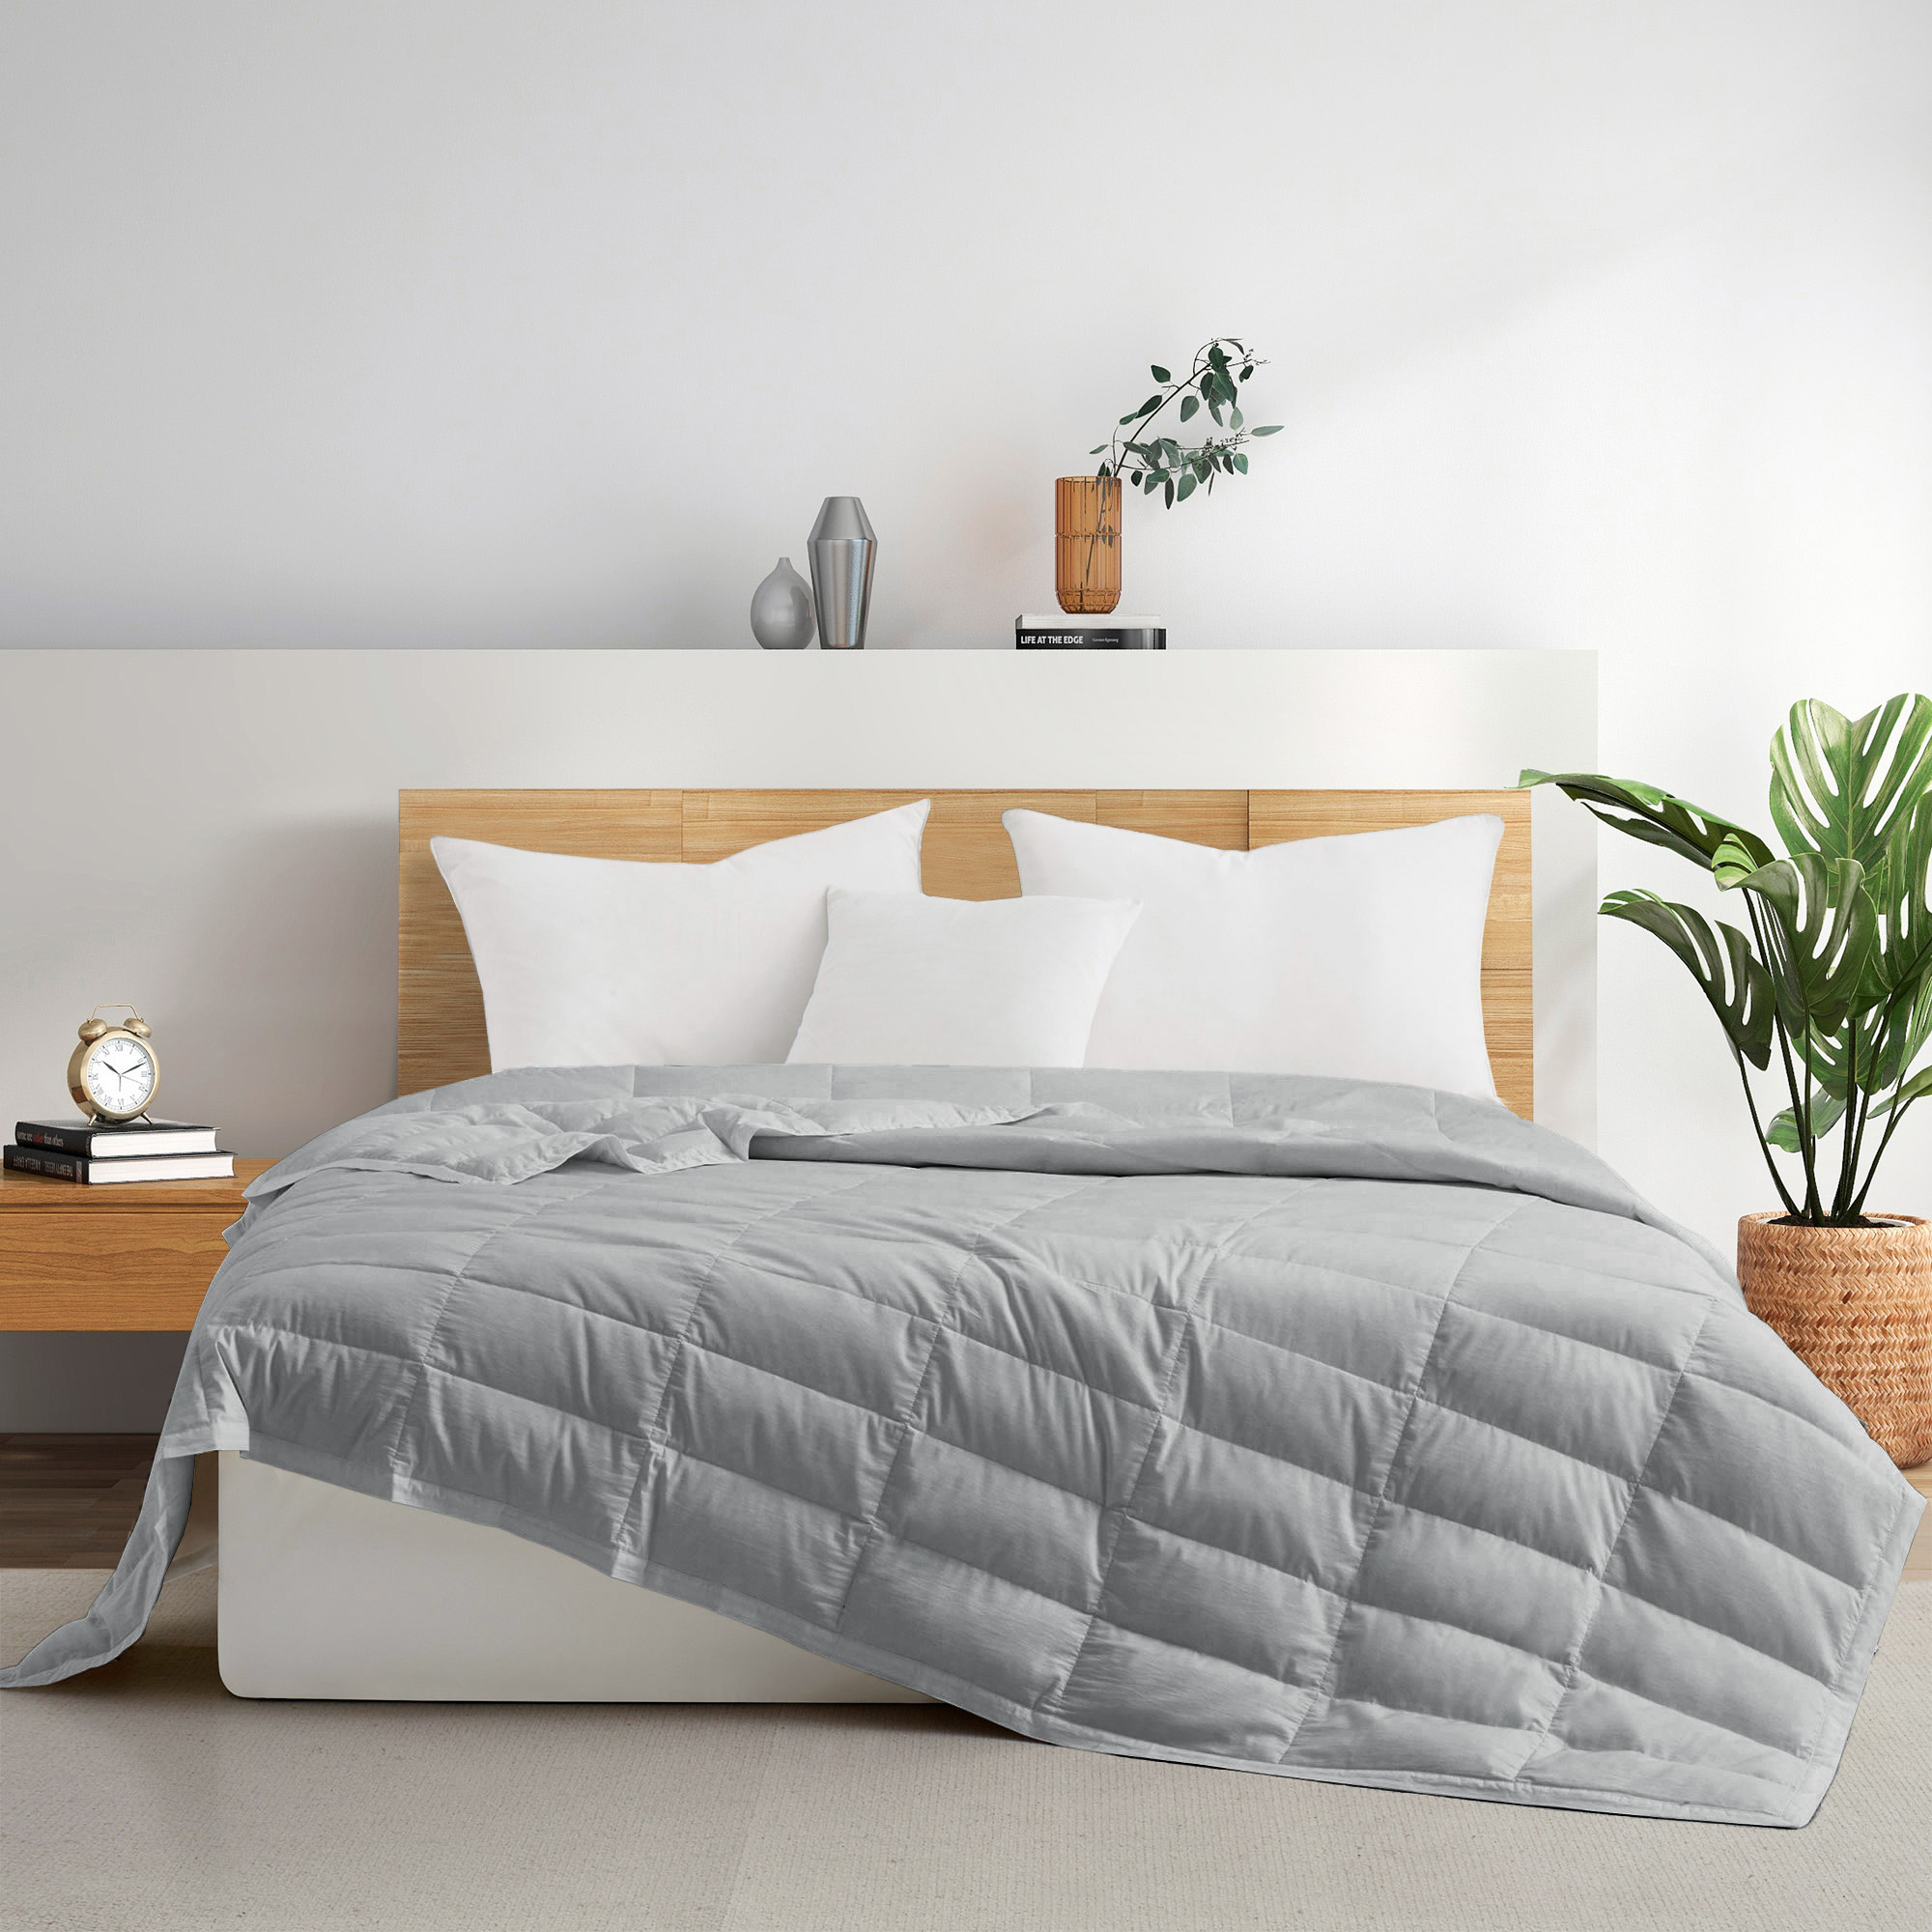 TENCELâ¢ Lyocell Lightweight Cooling Down Blanket-Luxurious Comfort Summer Blanket - Dark Gray, Full/Queen